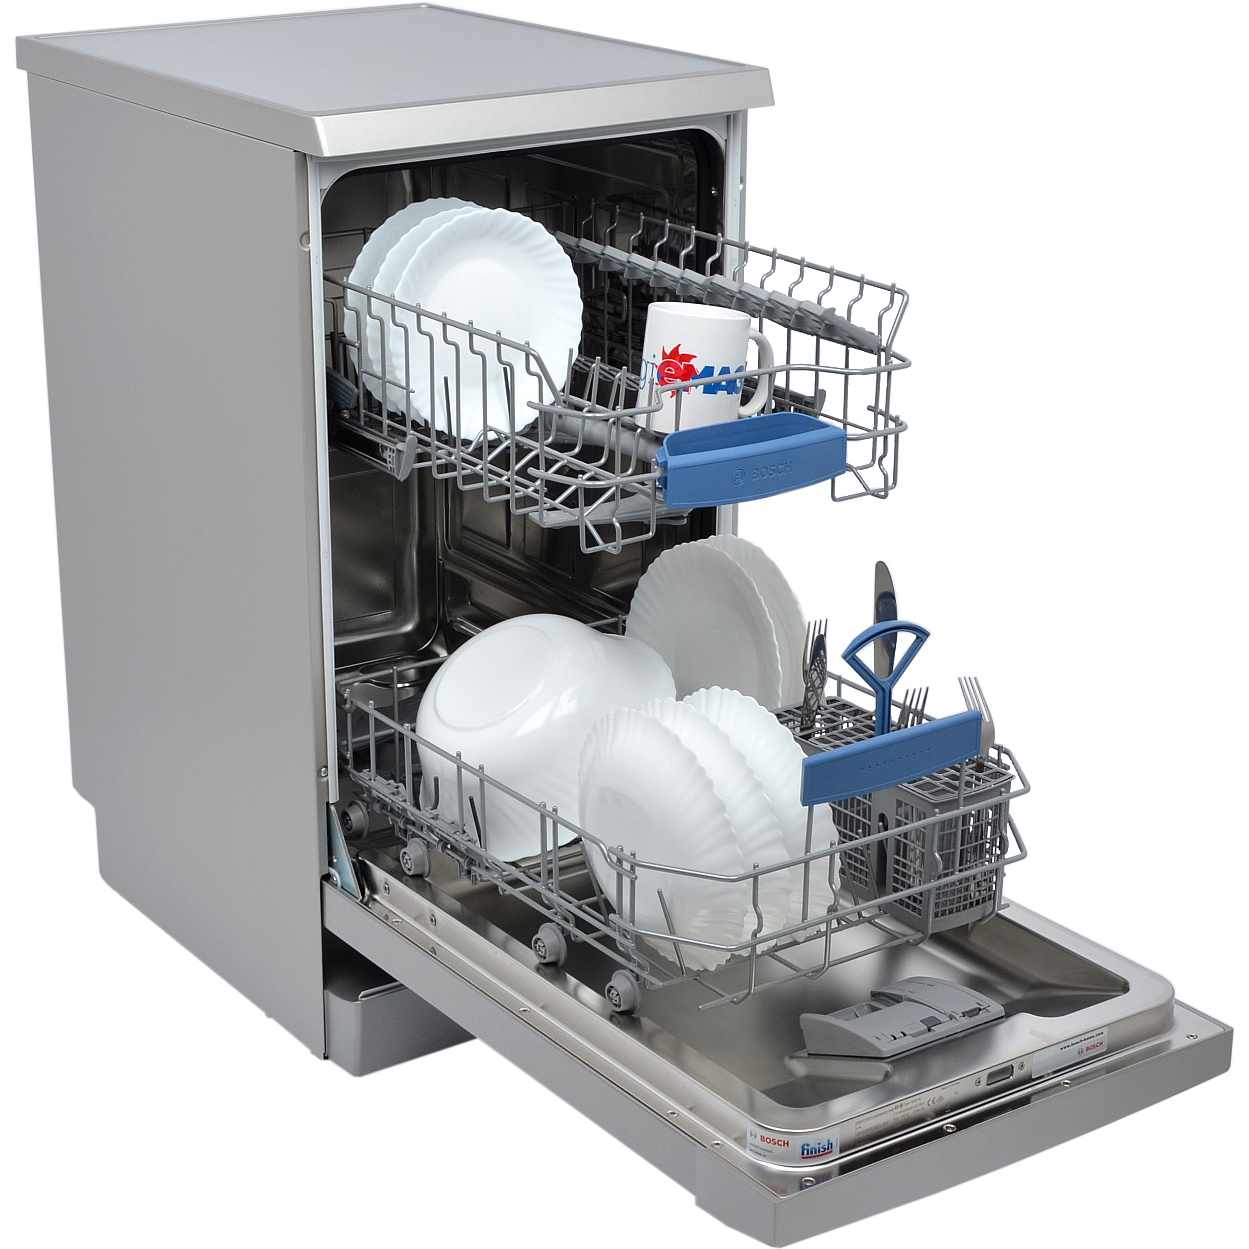 Днс купить посудомоечную встраиваемую. Посудомоечная машина Bosch sps2ikw1br. Посудомоечная машина Neff s855hmx50r. ПММ бош sps53. Посудомоечная машина Bosch spv6hmx1mr.